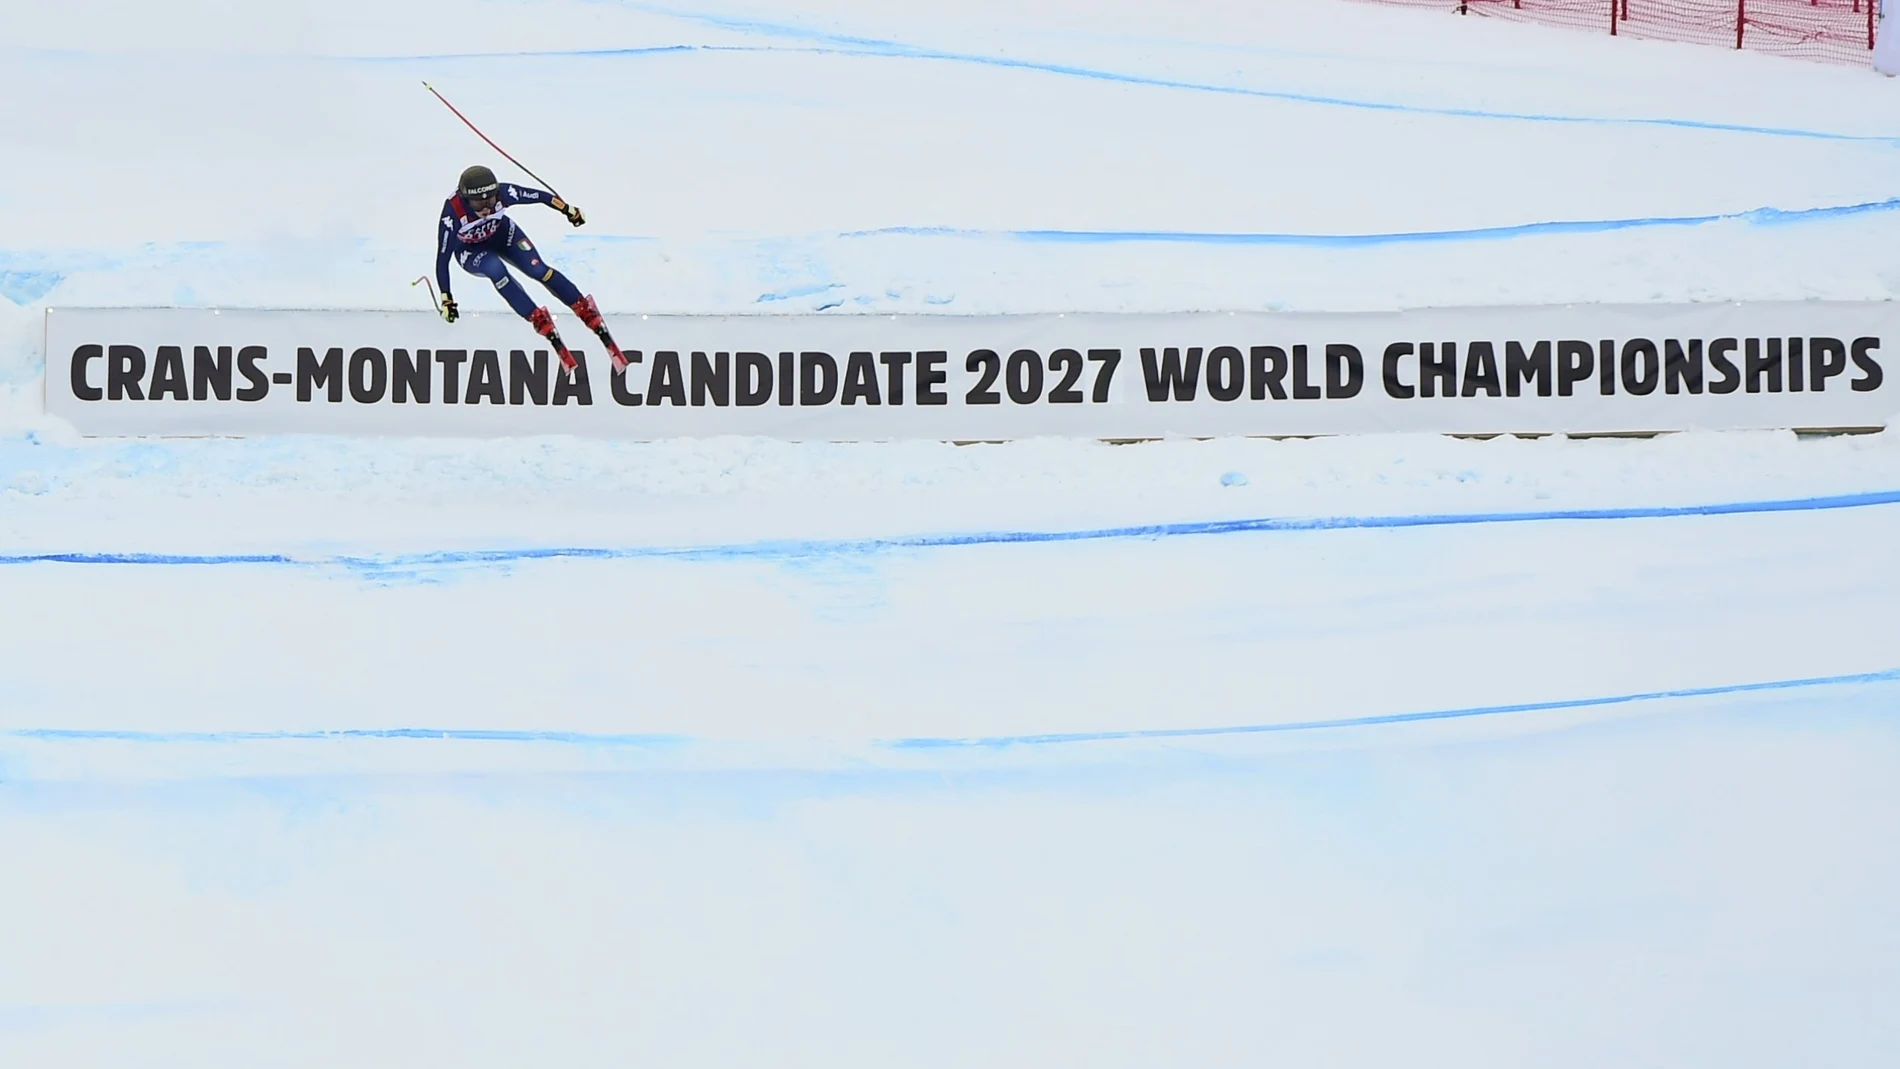 La italiana Sofia Goggia llega a la zona de meta del descenso de la Copa del Mundo de esquí alpino femenino en Crans Montana, Suiza, el sábado 23 de enero de 2021.(AP Photo/Marco Tacca) MARCO TACCAAP